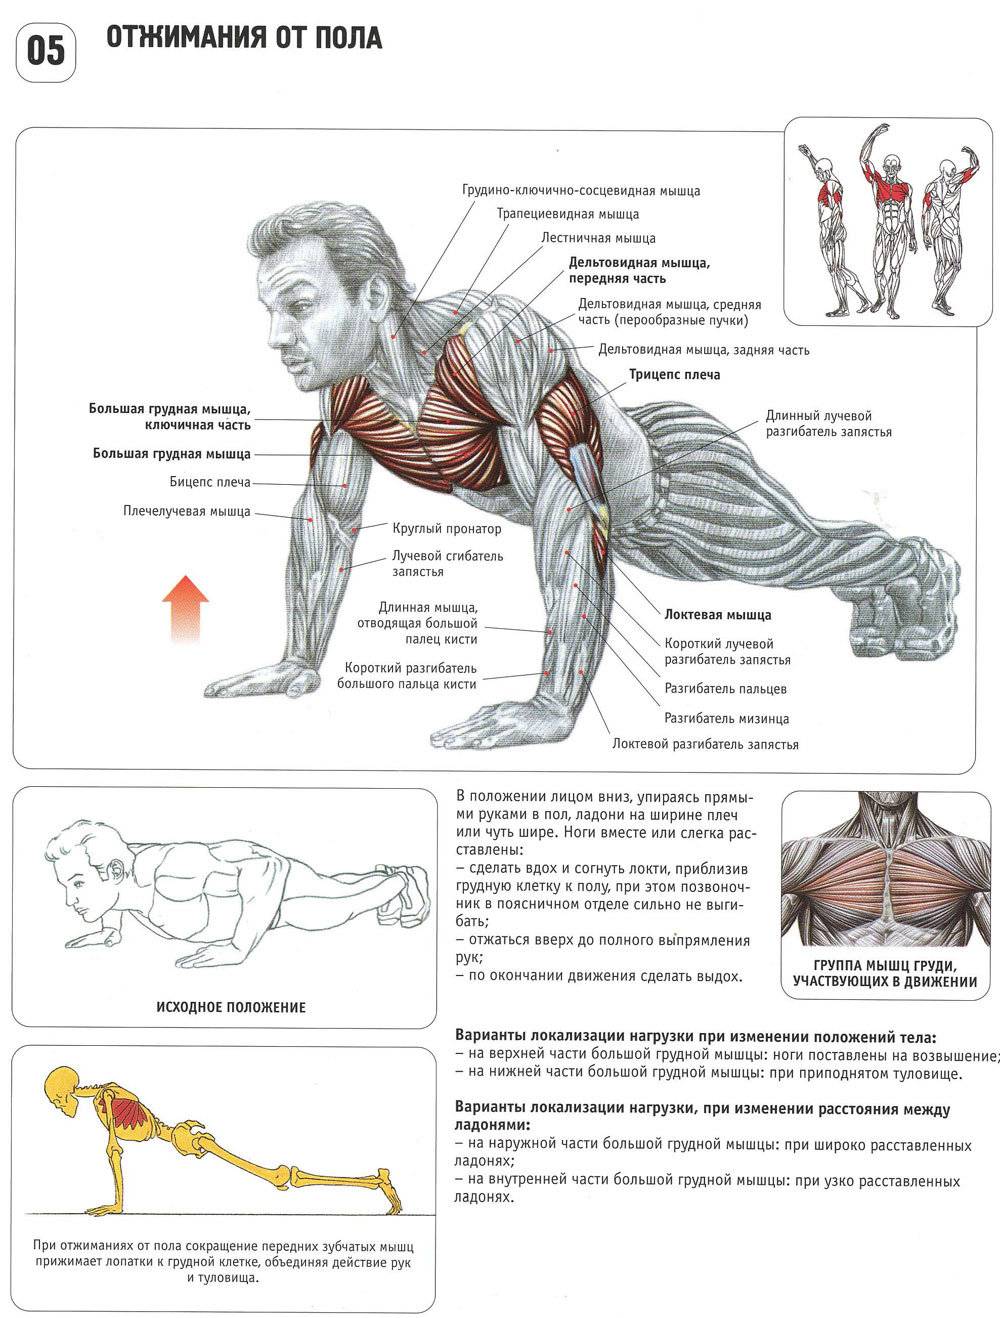 8 программ тренировки в домашних условиях для мужчин на набор мышечной массы и улучшения рельефа тела